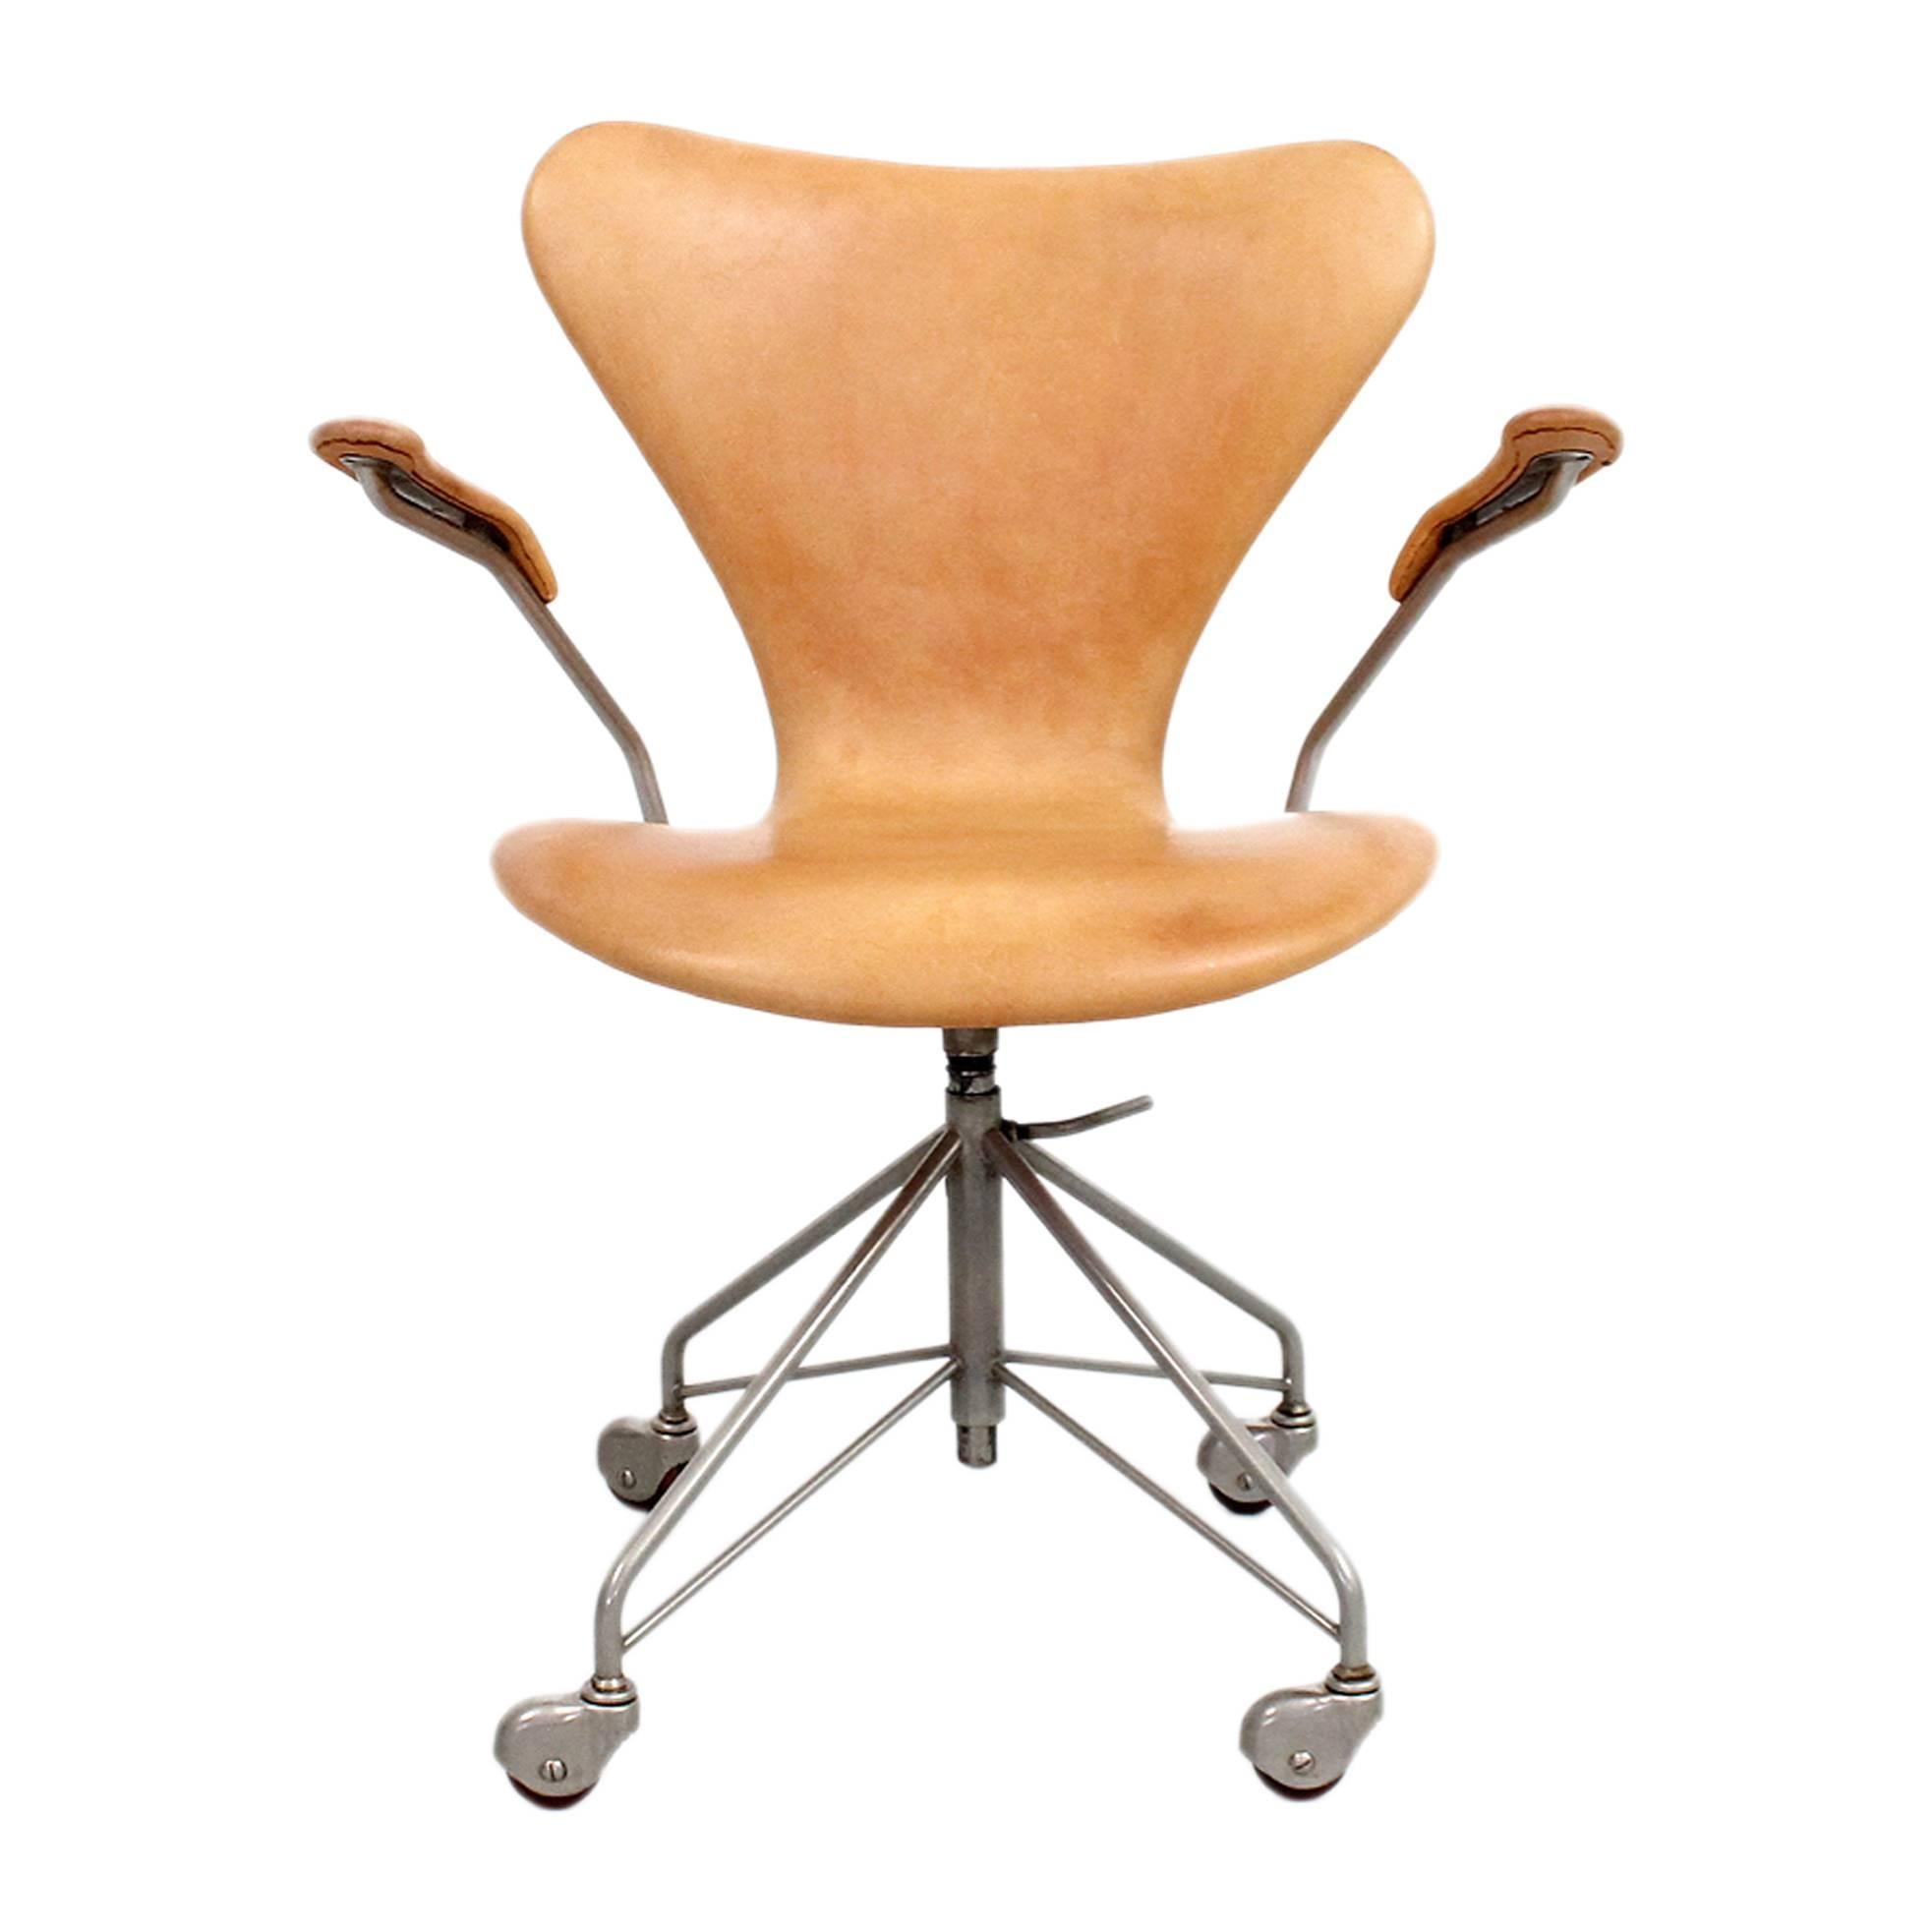 Sevener Desk Chair by Arne Jacobsen